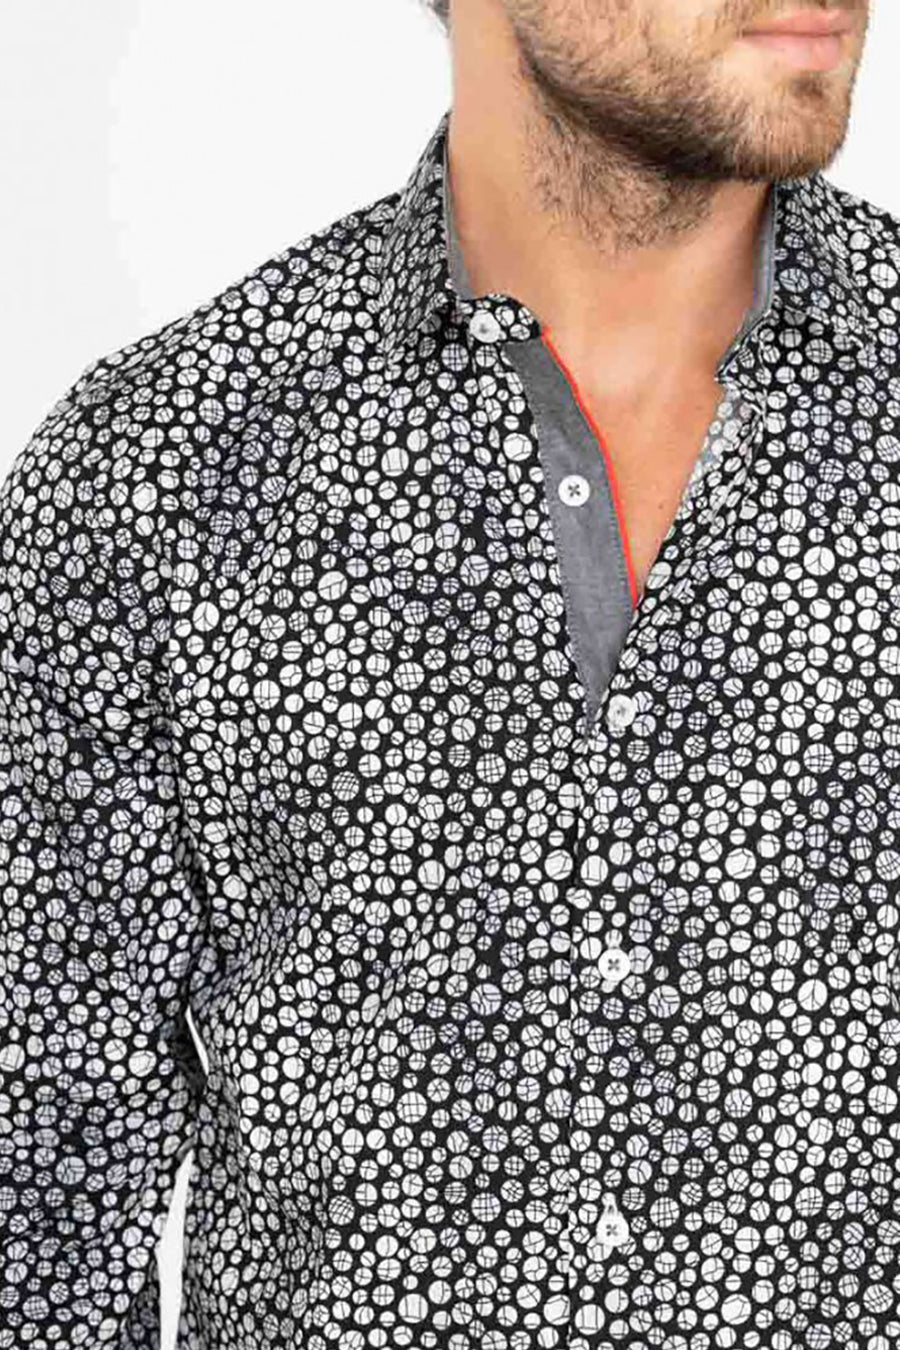 Ανδρικό πουκάμισο Jameson, Μαύρο/Λευκό 2